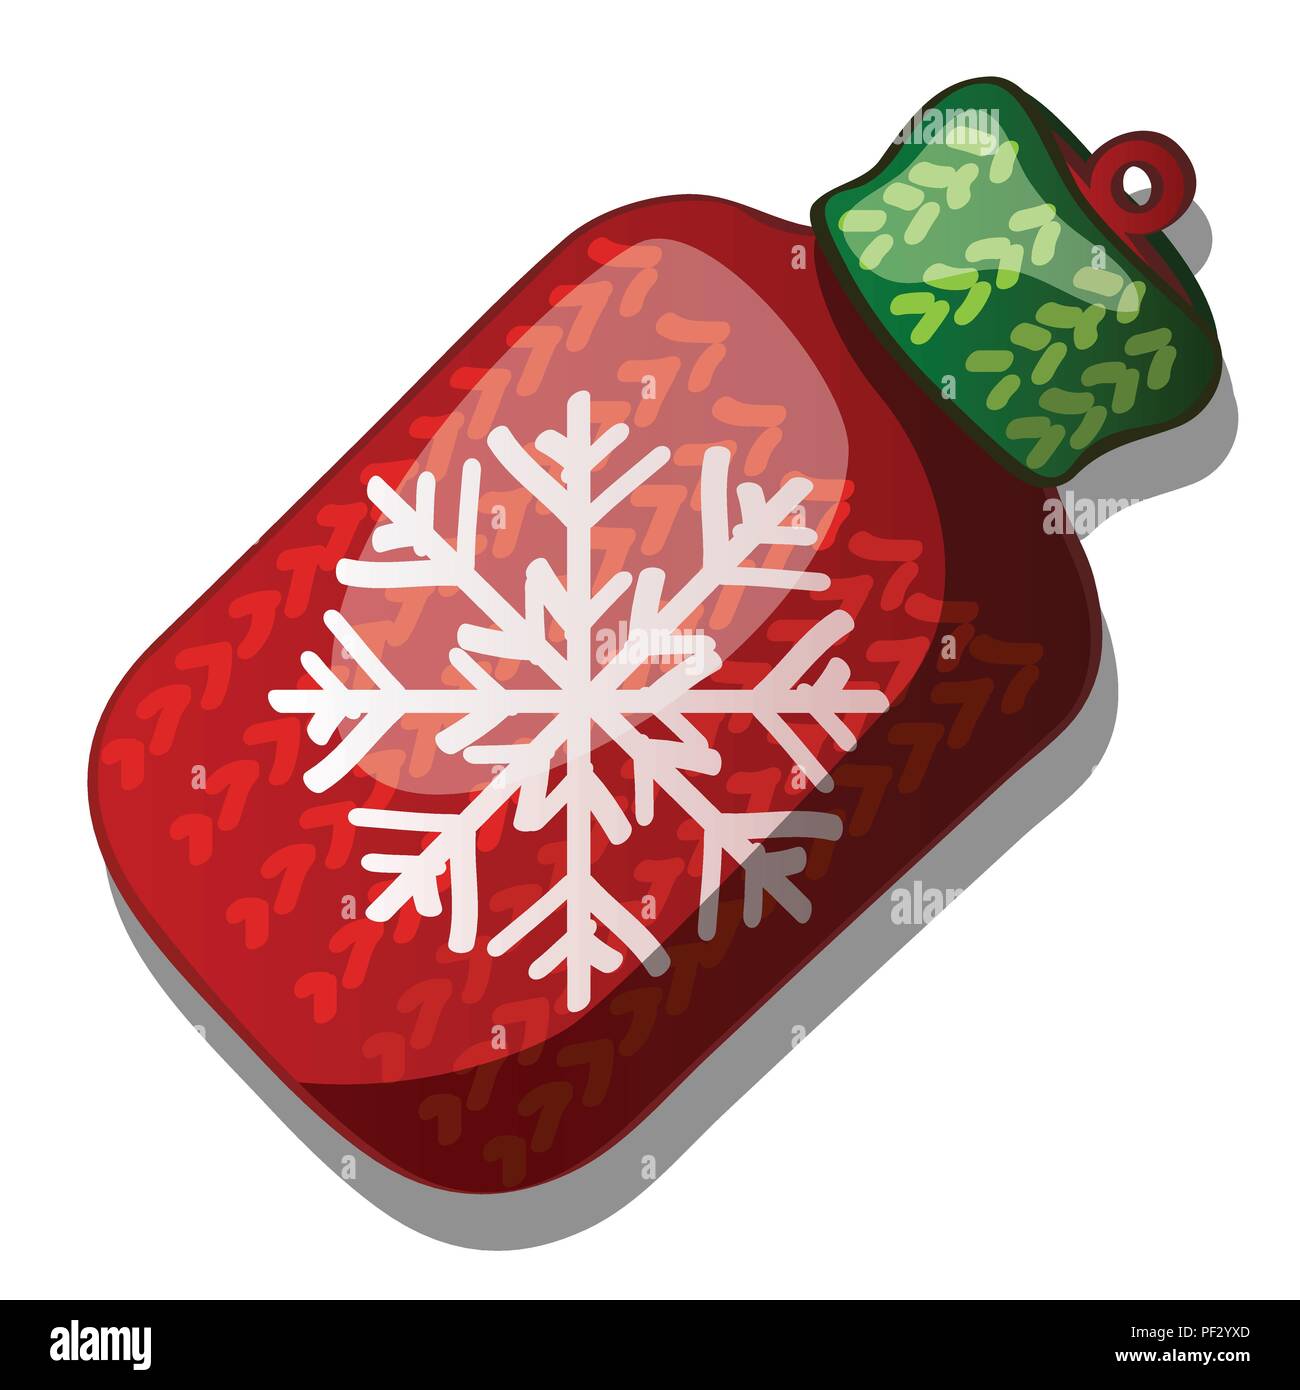 Weihnachten Spielzeug in der Form einer Wolle gestrickt Kolben rote und grüne Farbe mit Schneeflocke auf weißem Hintergrund. Bunte festlichen Flitter. Attribut für das Neue Jahr und Weihnachten. Vector Illustration. Stock Vektor